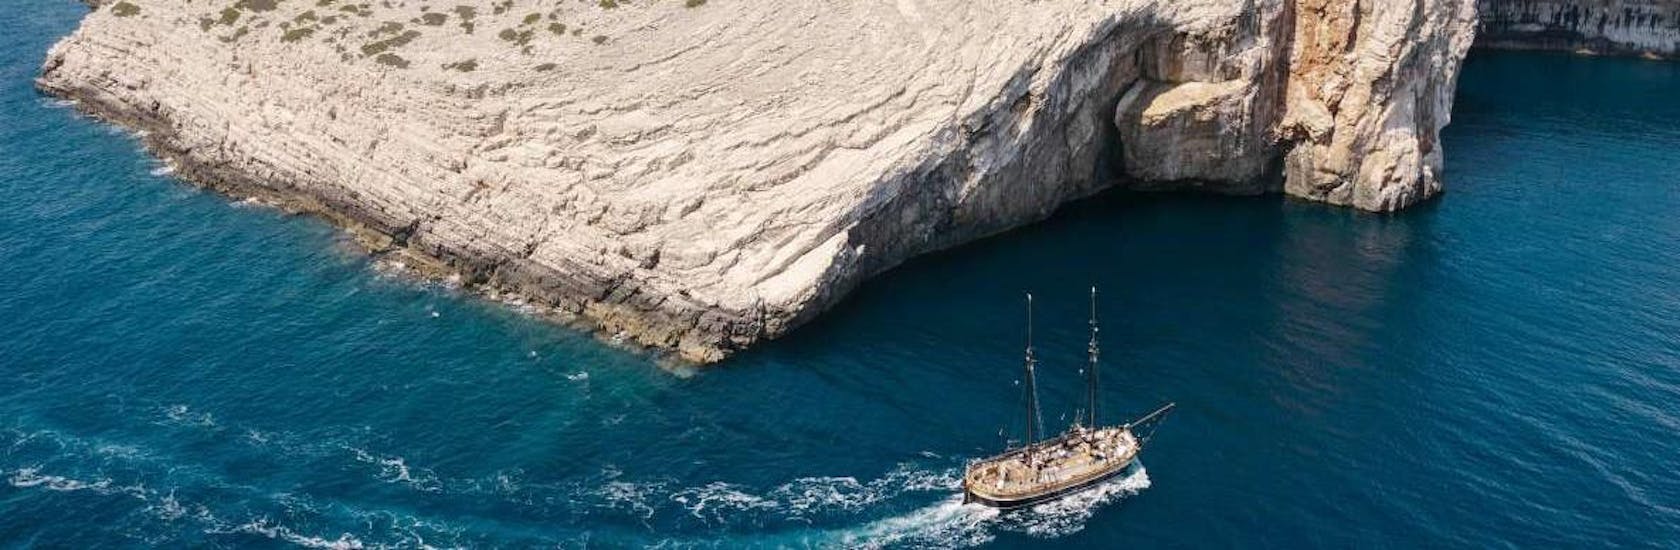 De boot die wordt gebruikt tijdens de boottocht naar de Kornati-eilanden.